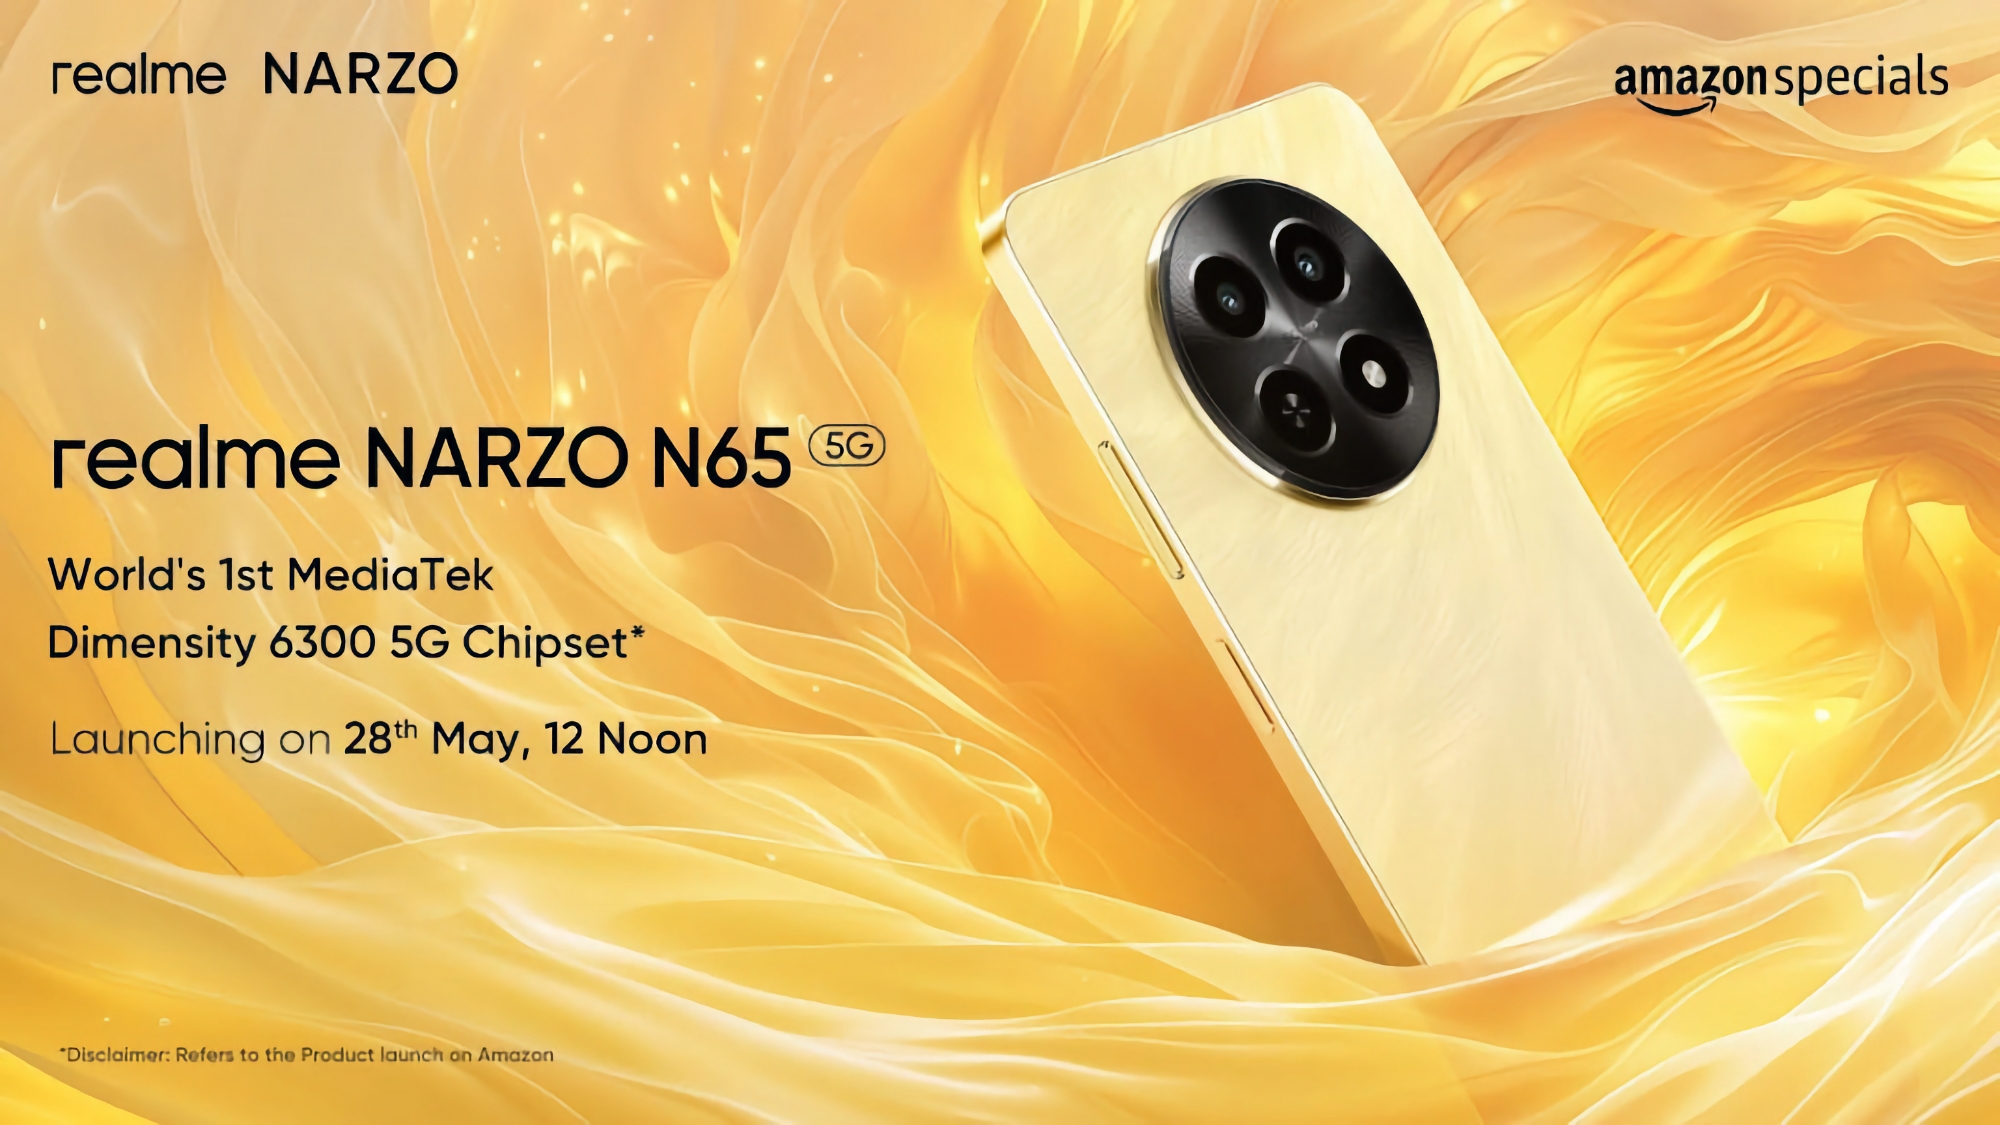 realme presentará el 28 de mayo el smartphone económico Narzo N65 5G con procesador MediaTek Dimensity 6300 a bordo